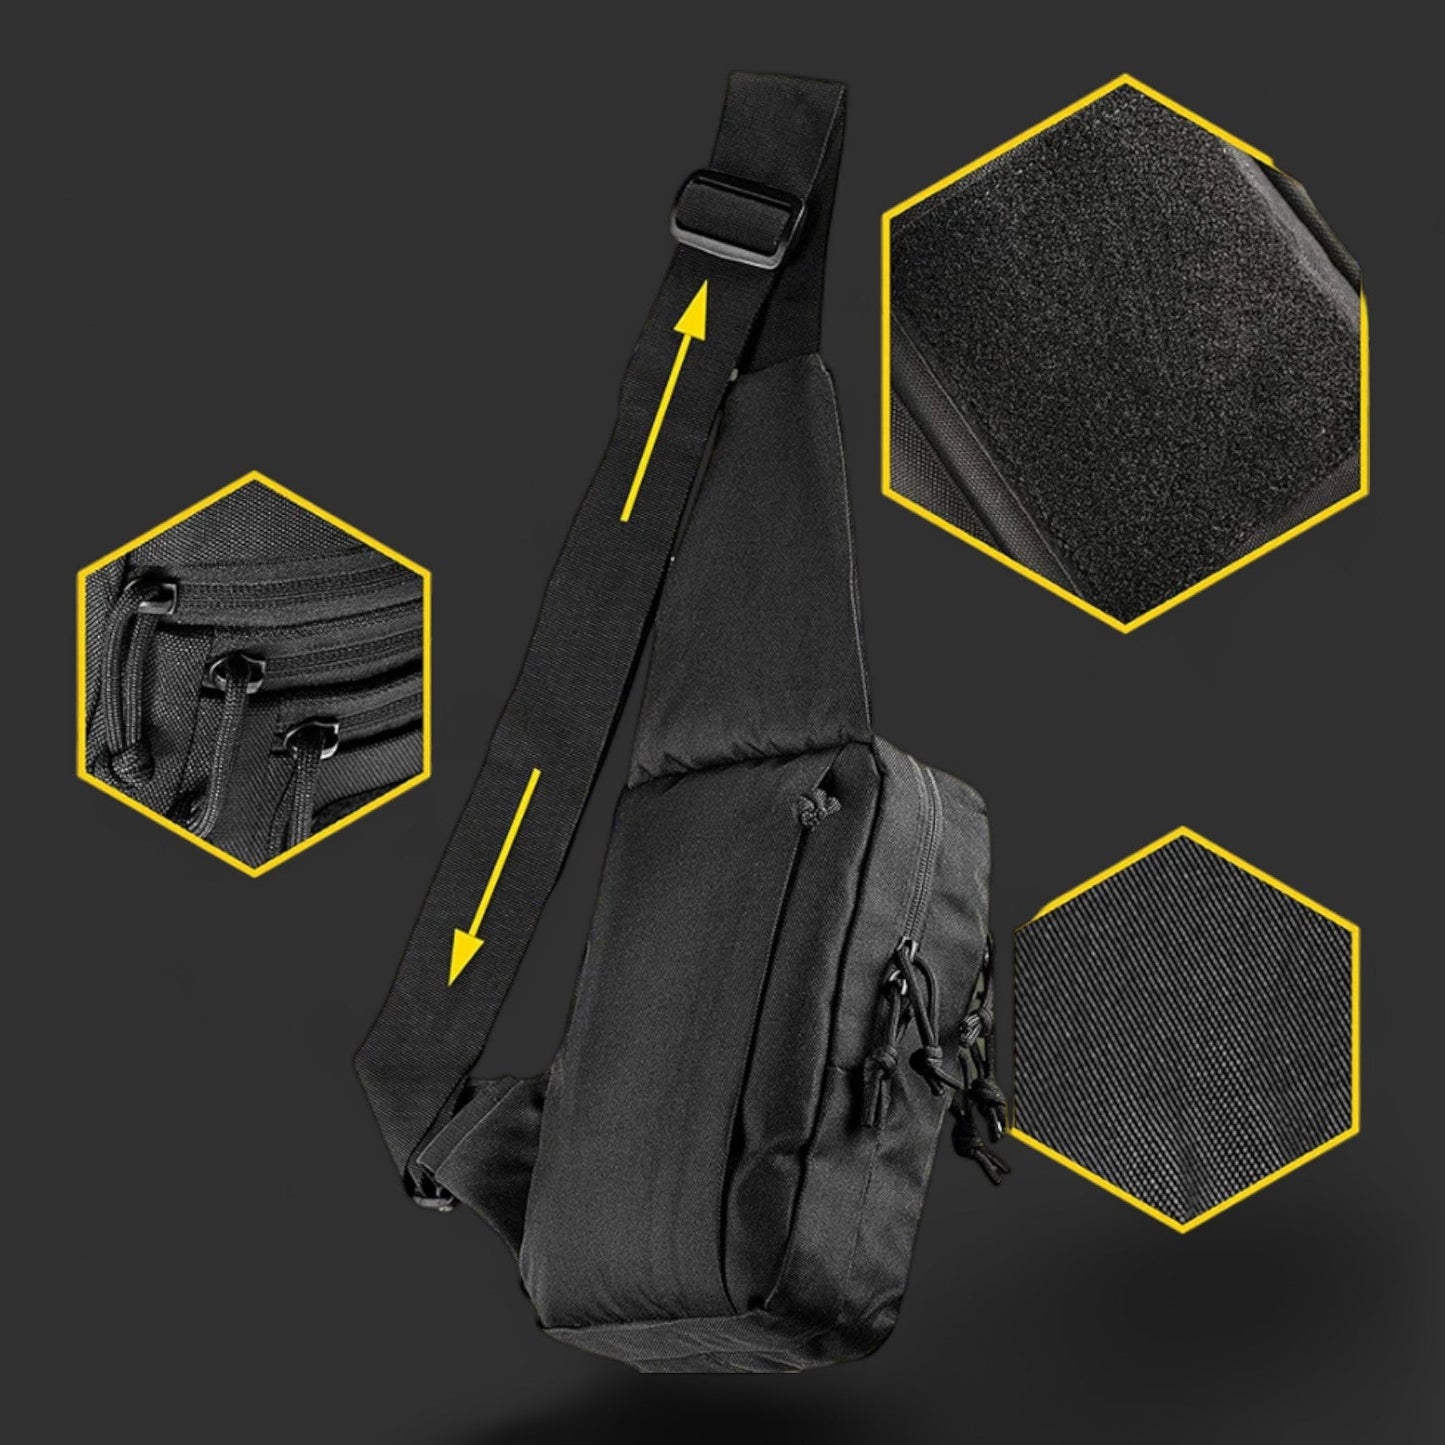 Tactical Gun Bag Military Shoulder Strap - BlasterMastersbags